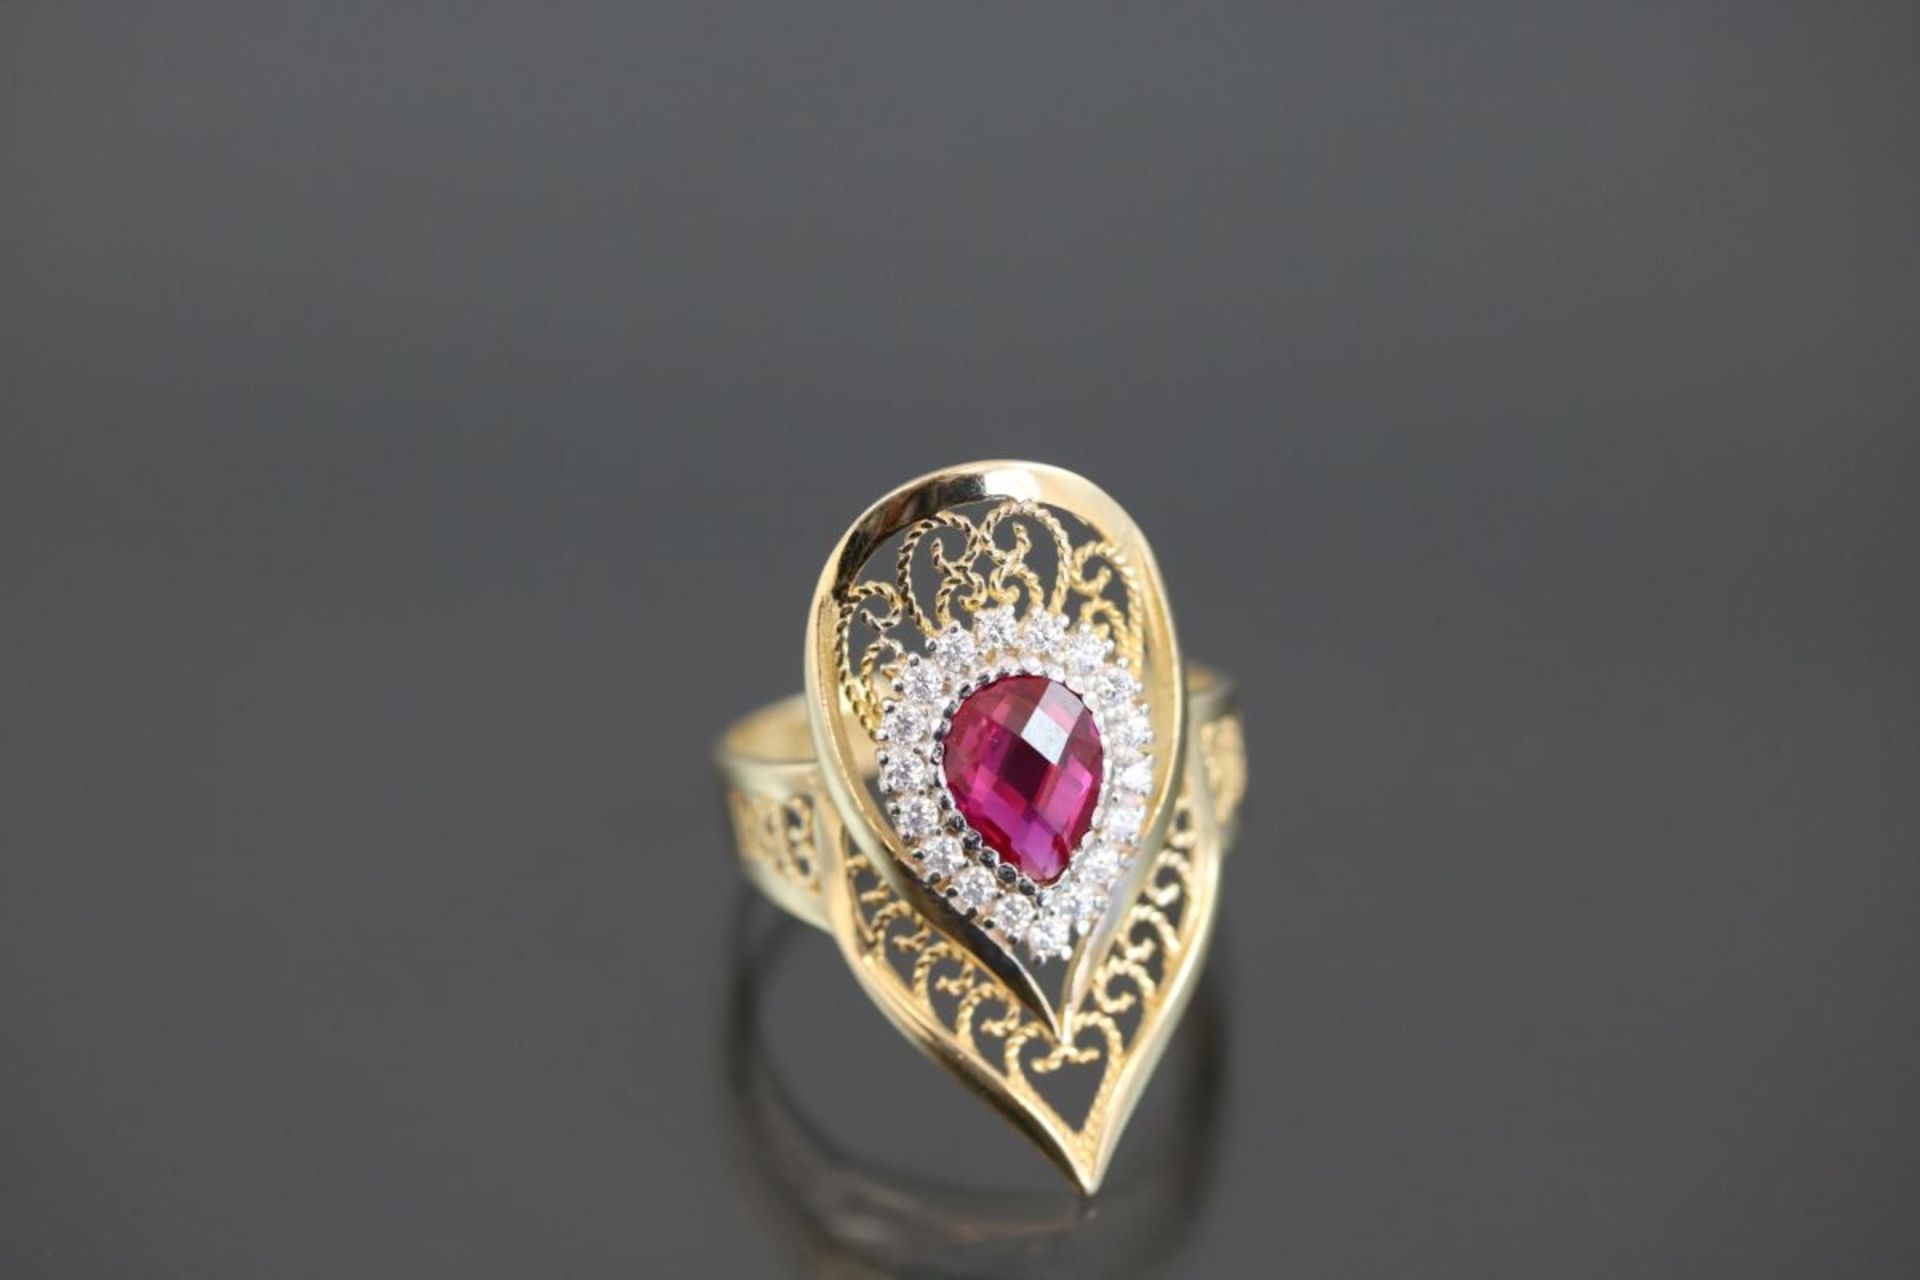 Farbstein-Ring, 585 Gelbgold4,25 Gramm Ringgröße: 59Schätzpreis: 600,-